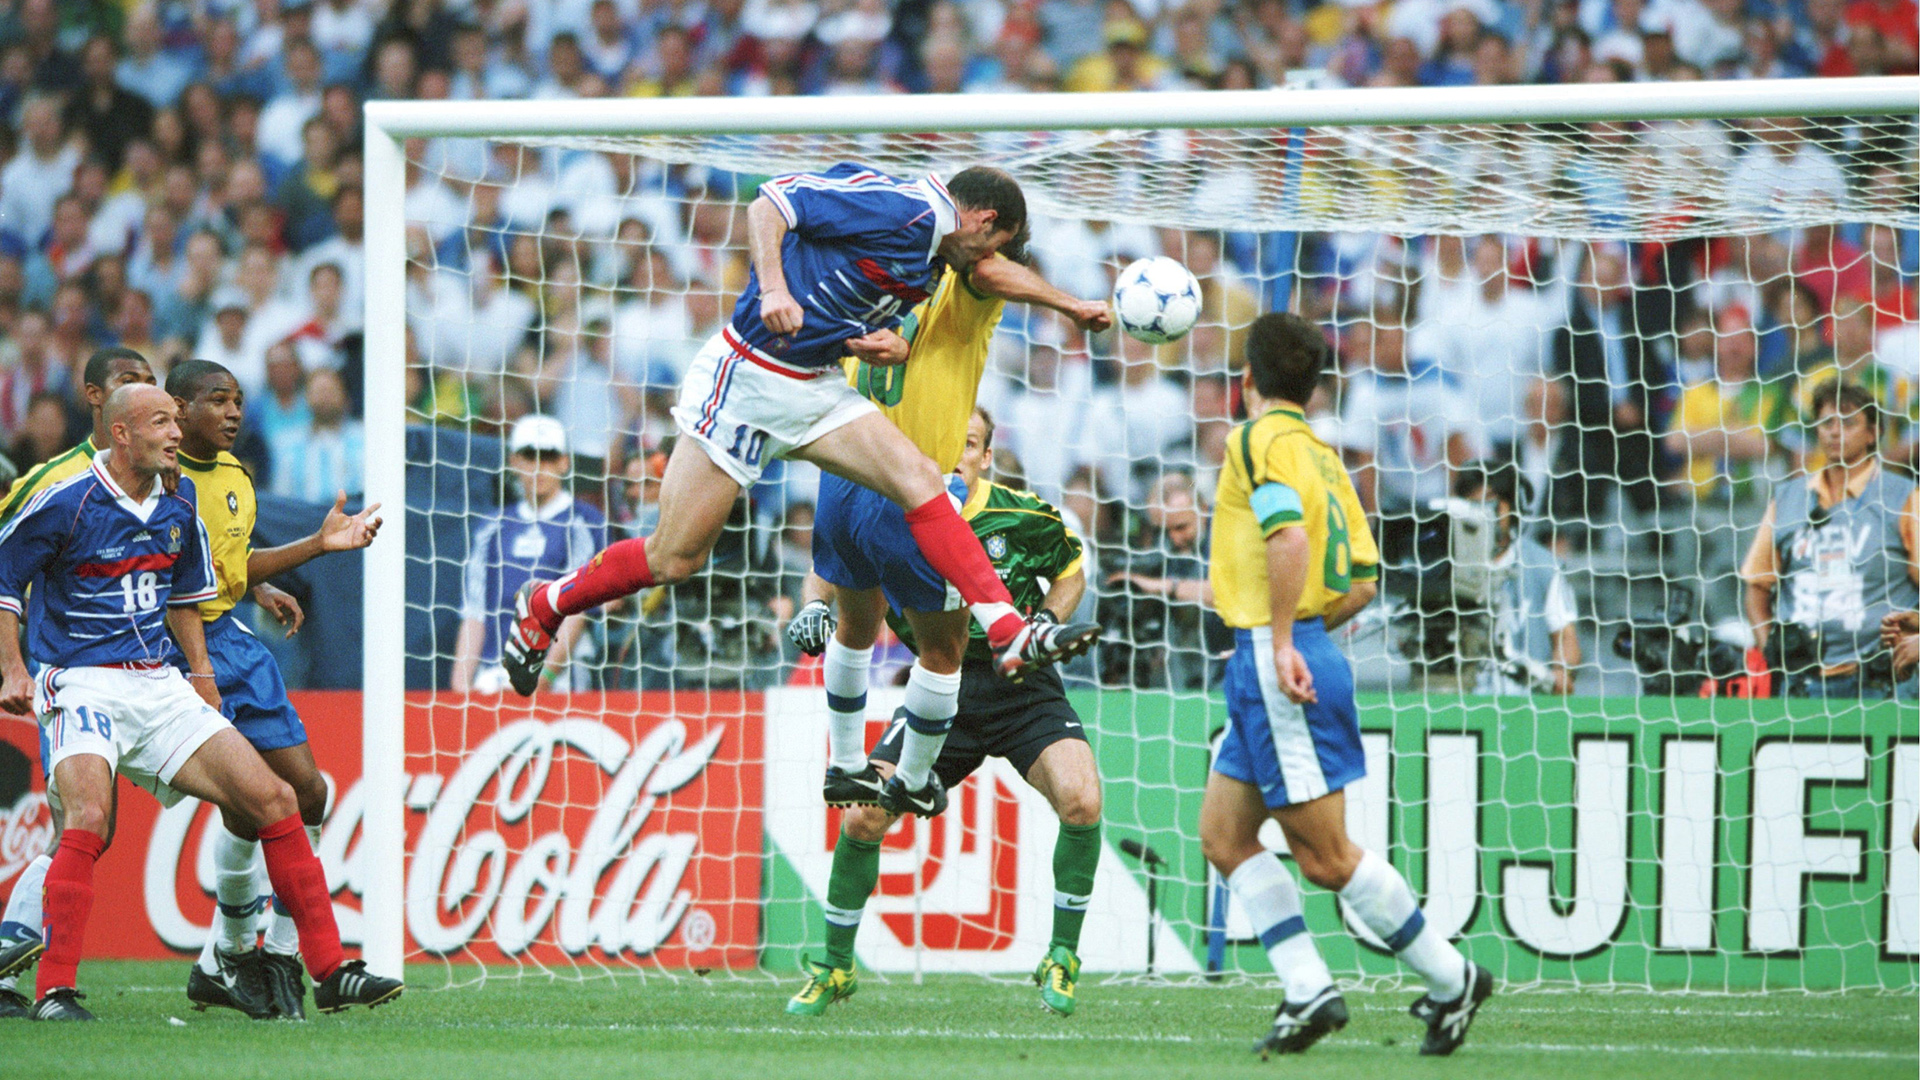 Zinedine Zidane France Brazil World Cup 1998 final - Goal.com1920 x 1080